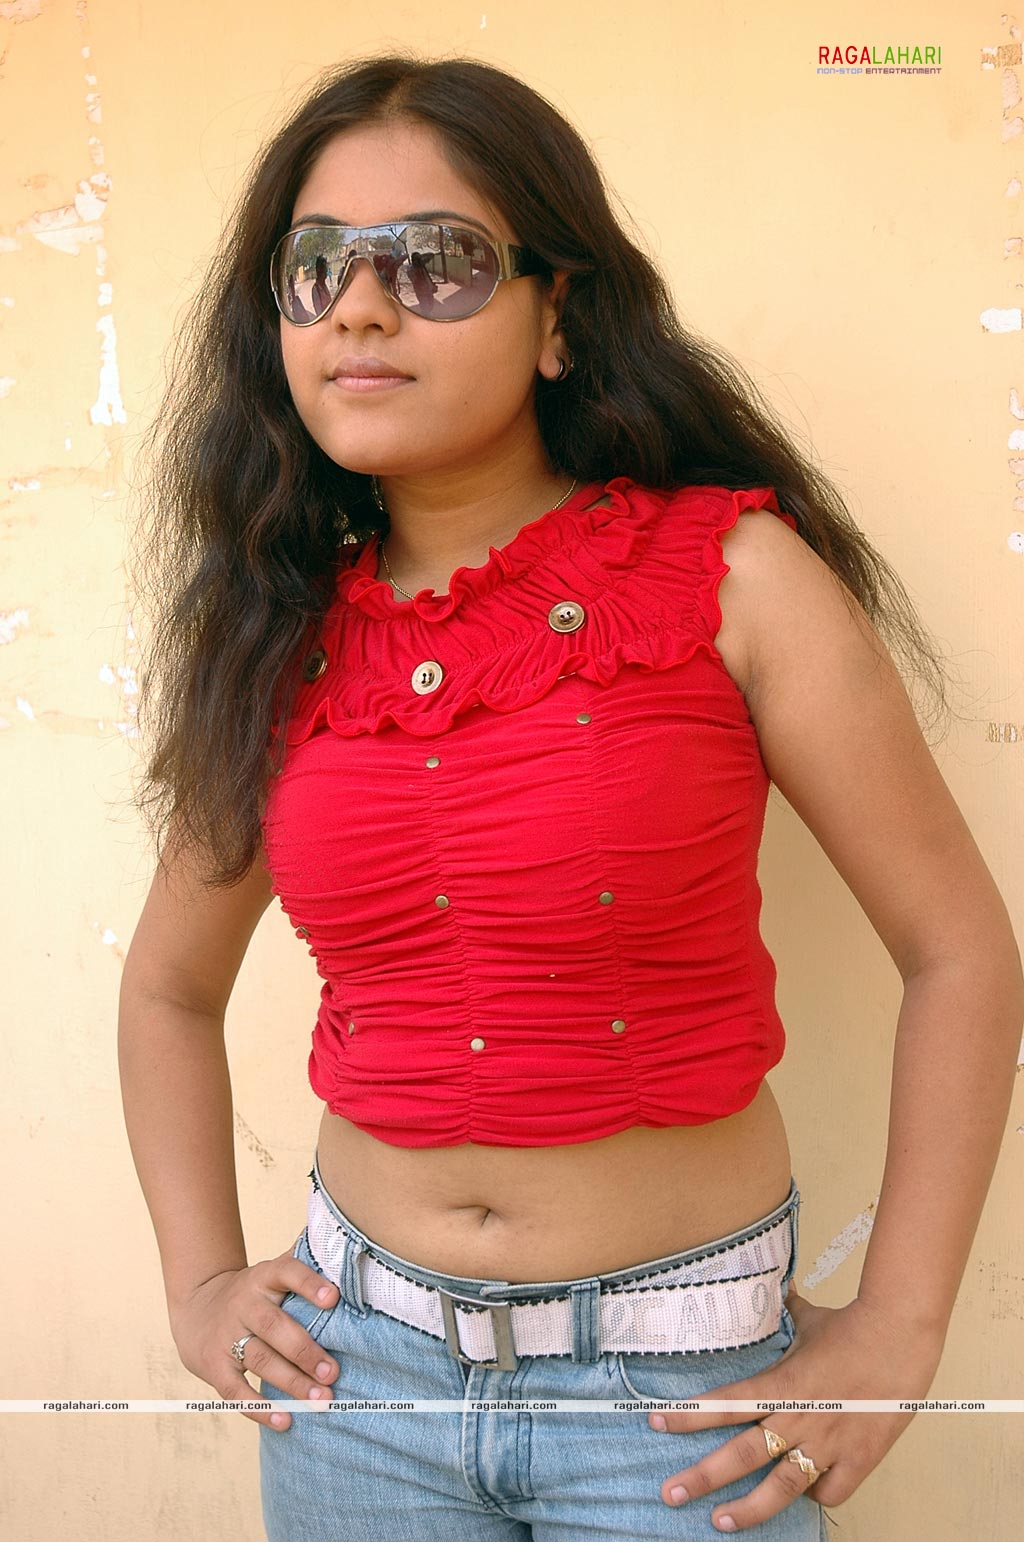 Jyotsna